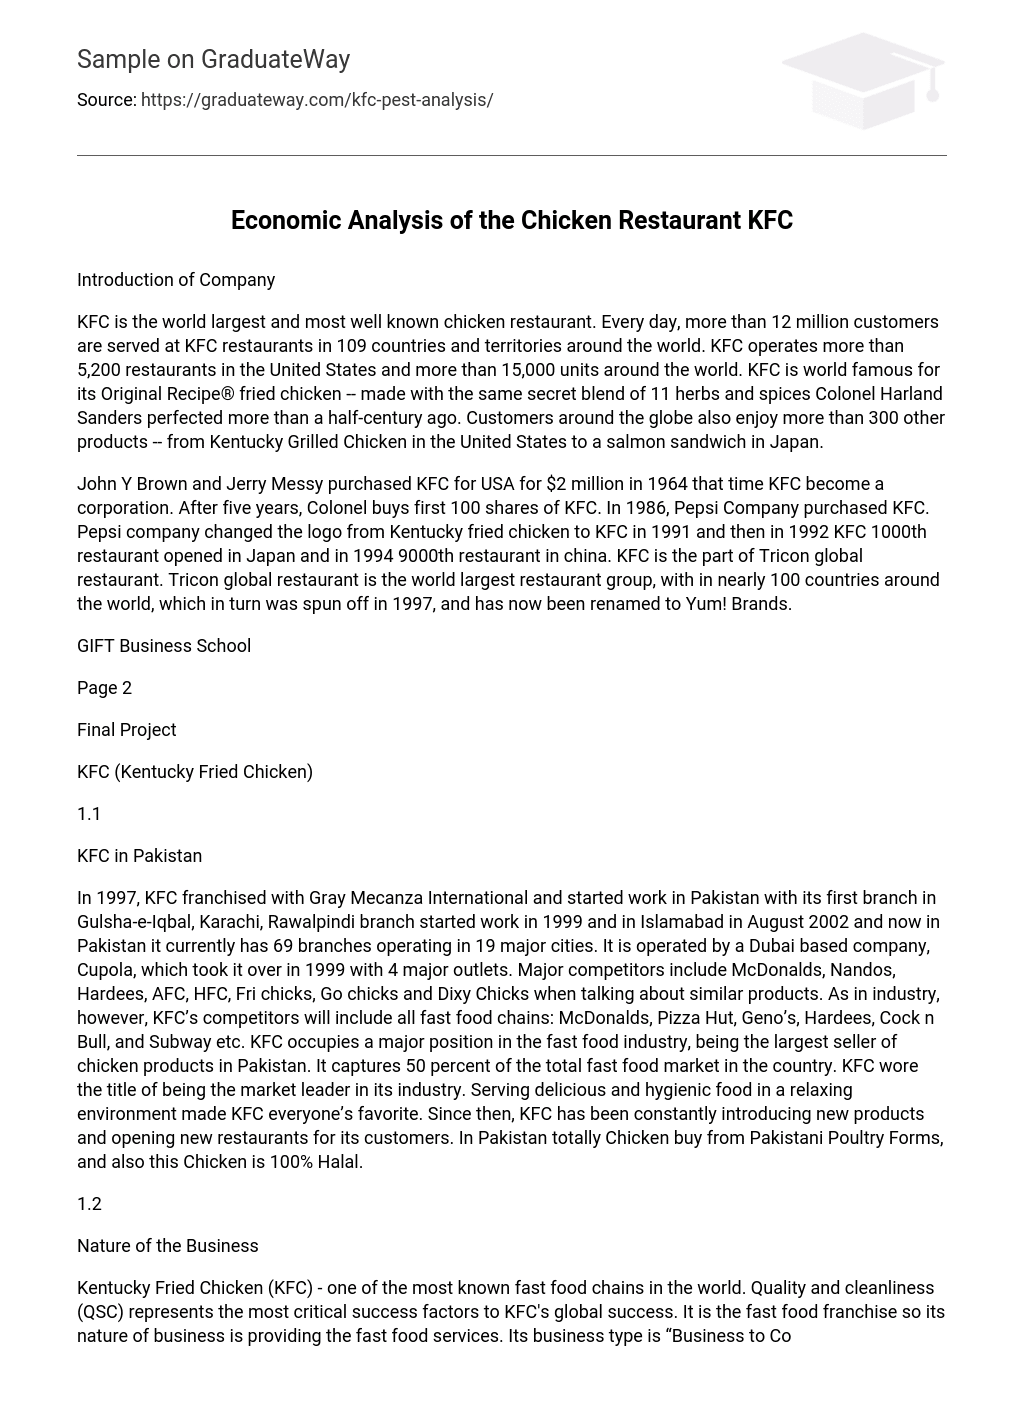 Economic Analysis of the Chicken Restaurant KFC